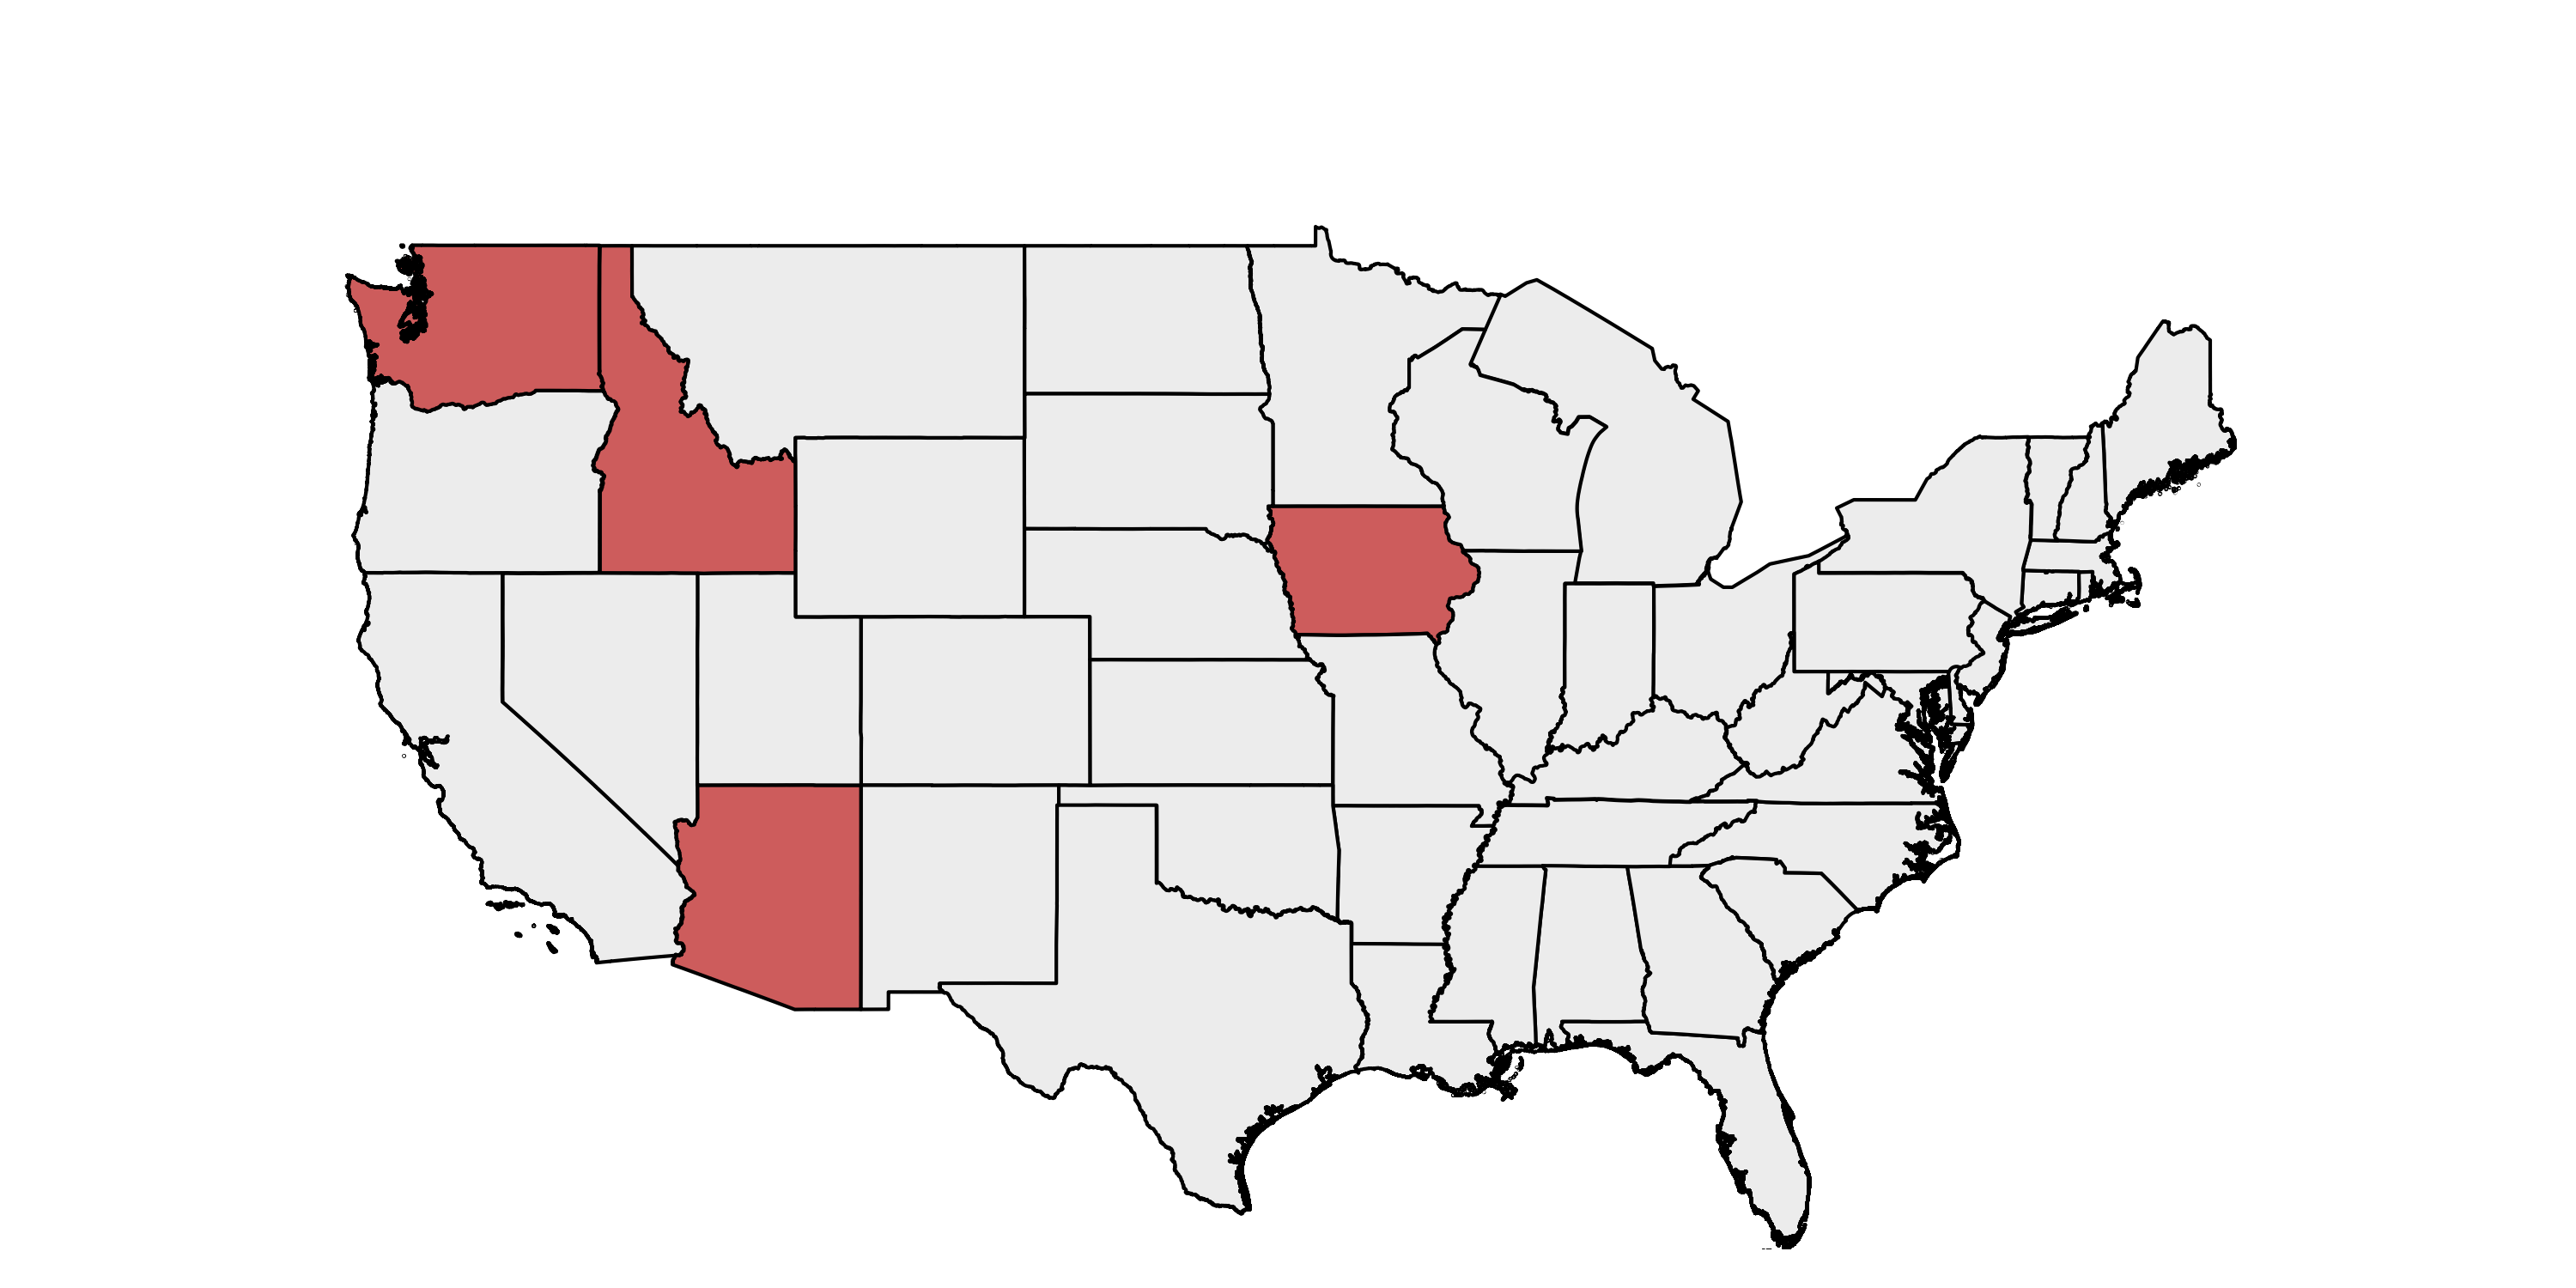 Arizona, Idaho, Iowa, and Washington